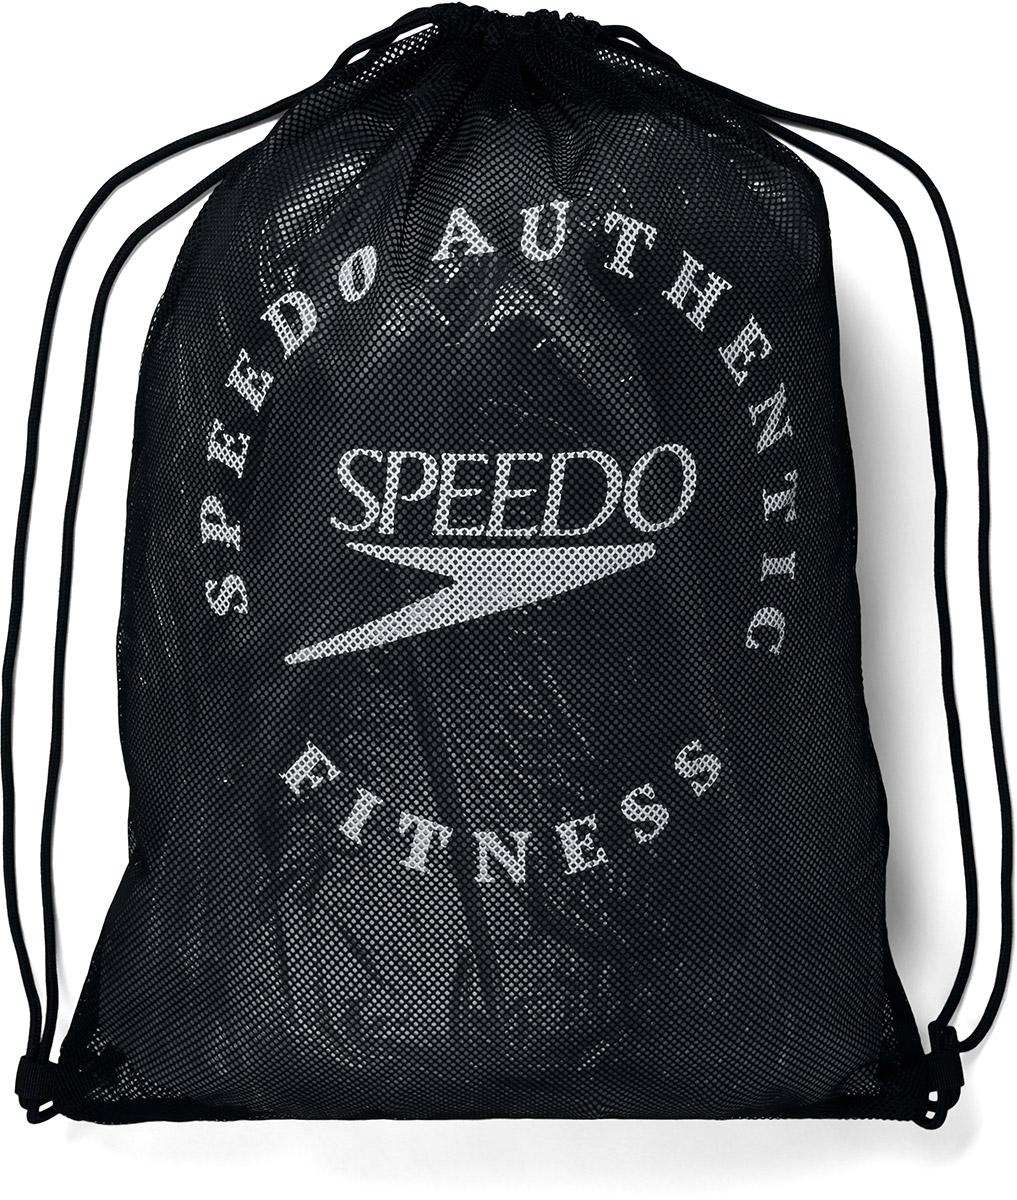 Speedo Printed Mesh Bag Xu - Black/white